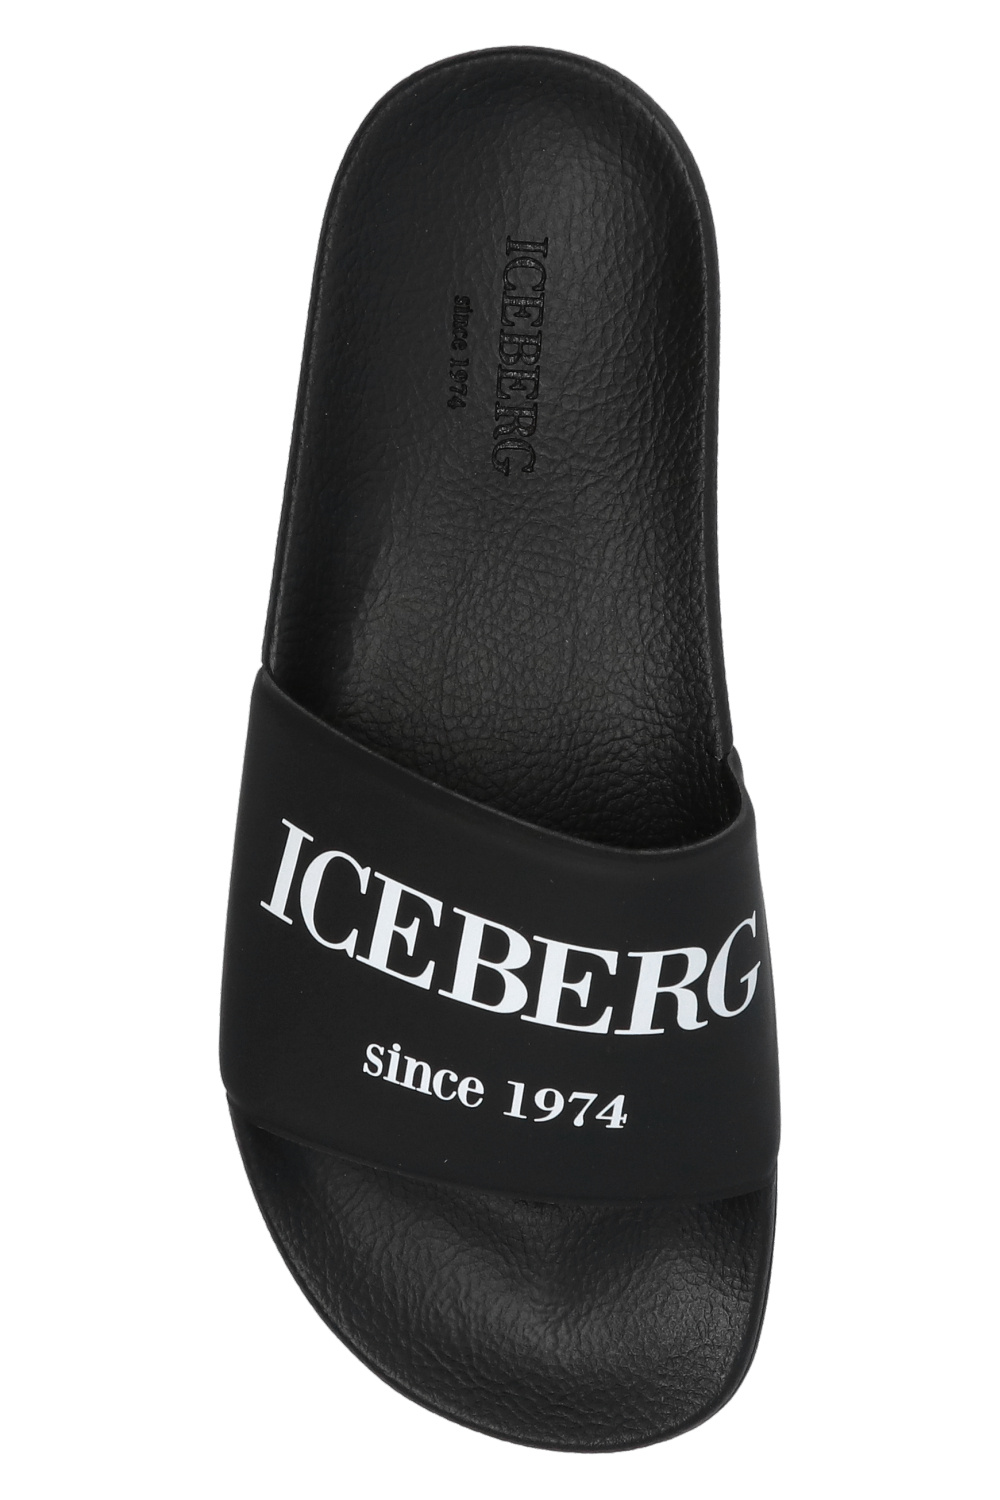 Iceberg shoes gino rossi akane dwi265 y76 0299 1400 0 beige